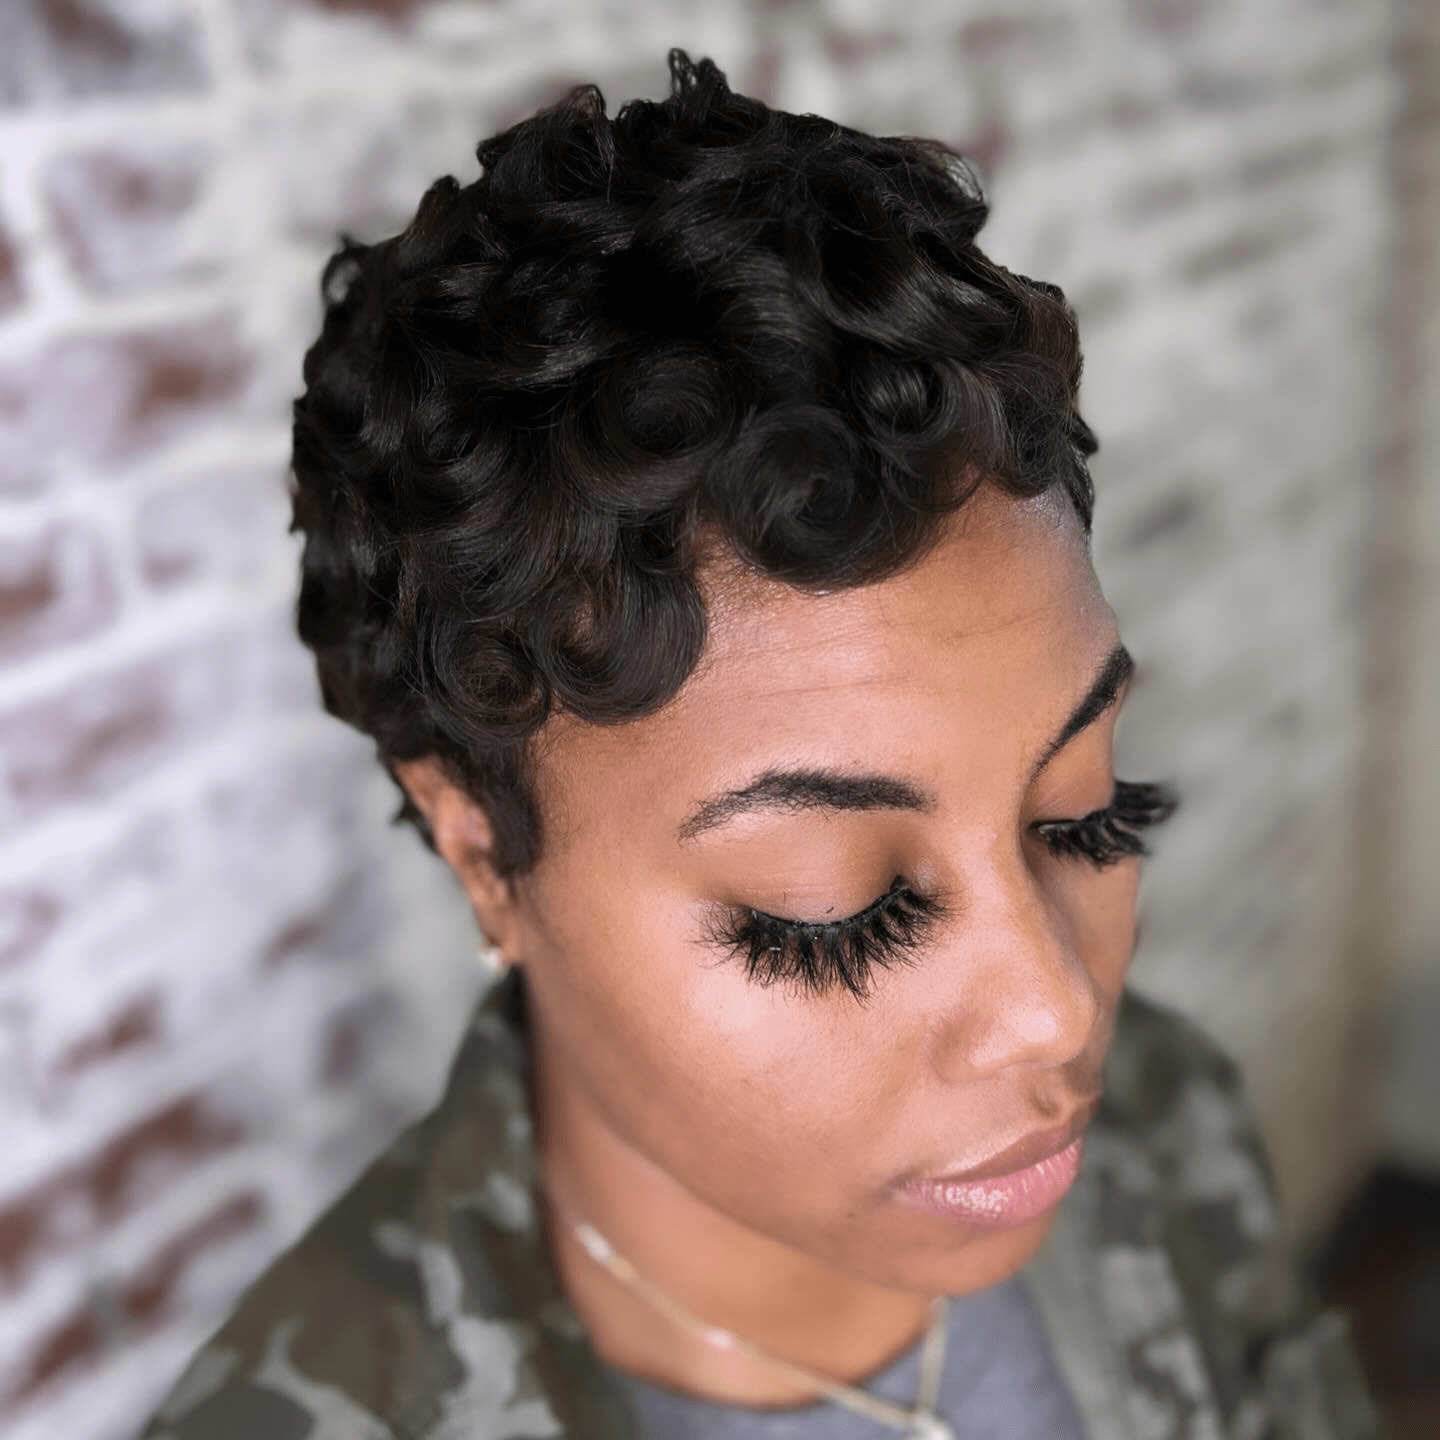 Curly Elegance in Pixie Cut